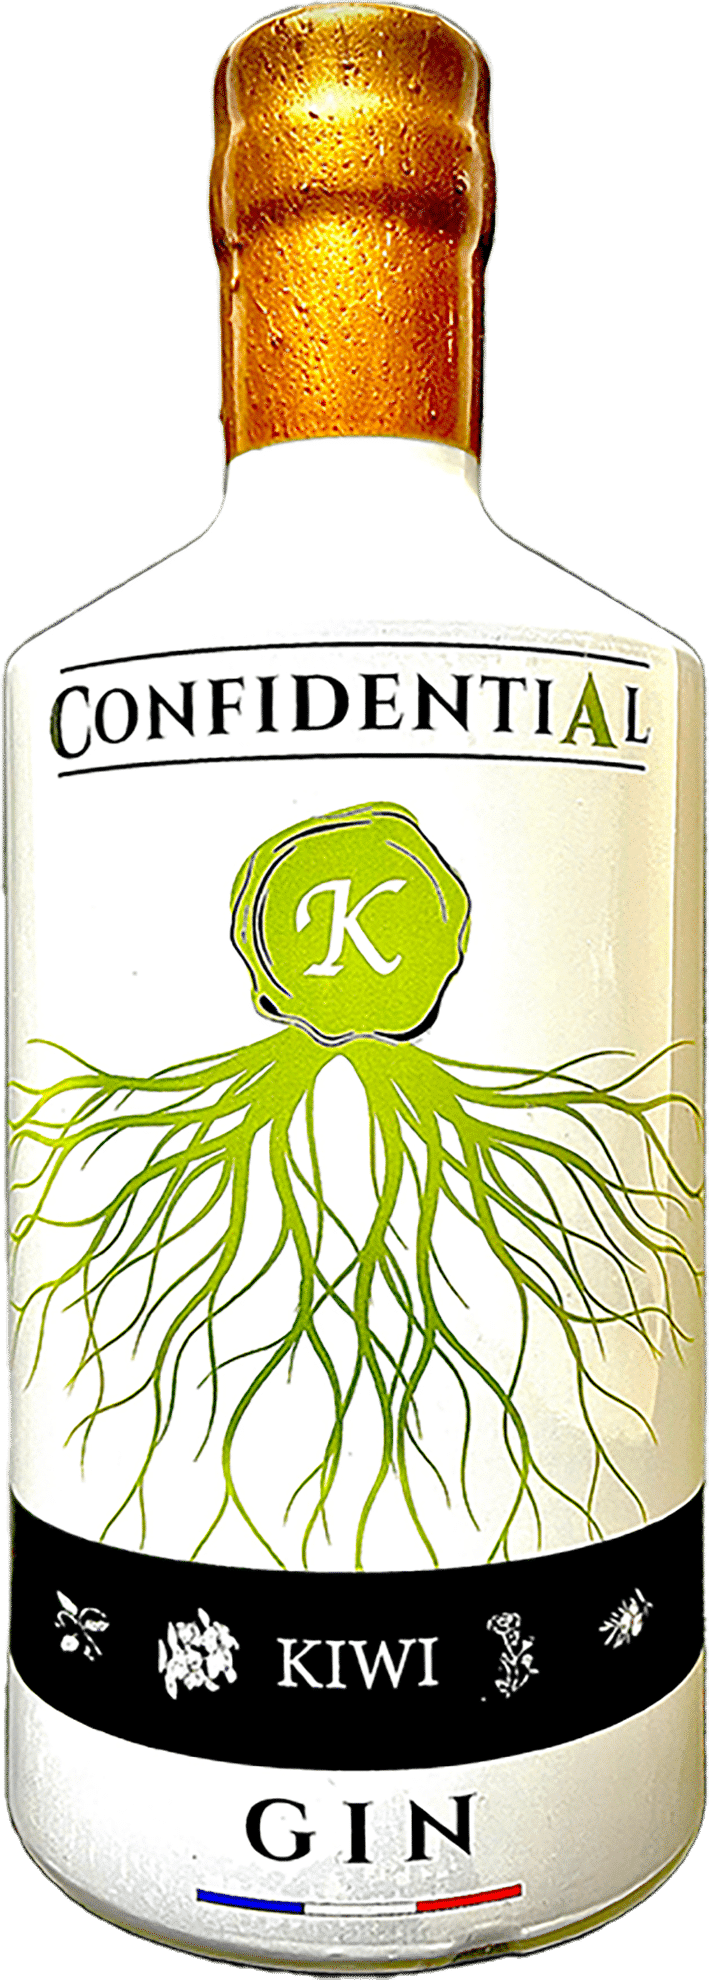 gin kiwi confidential